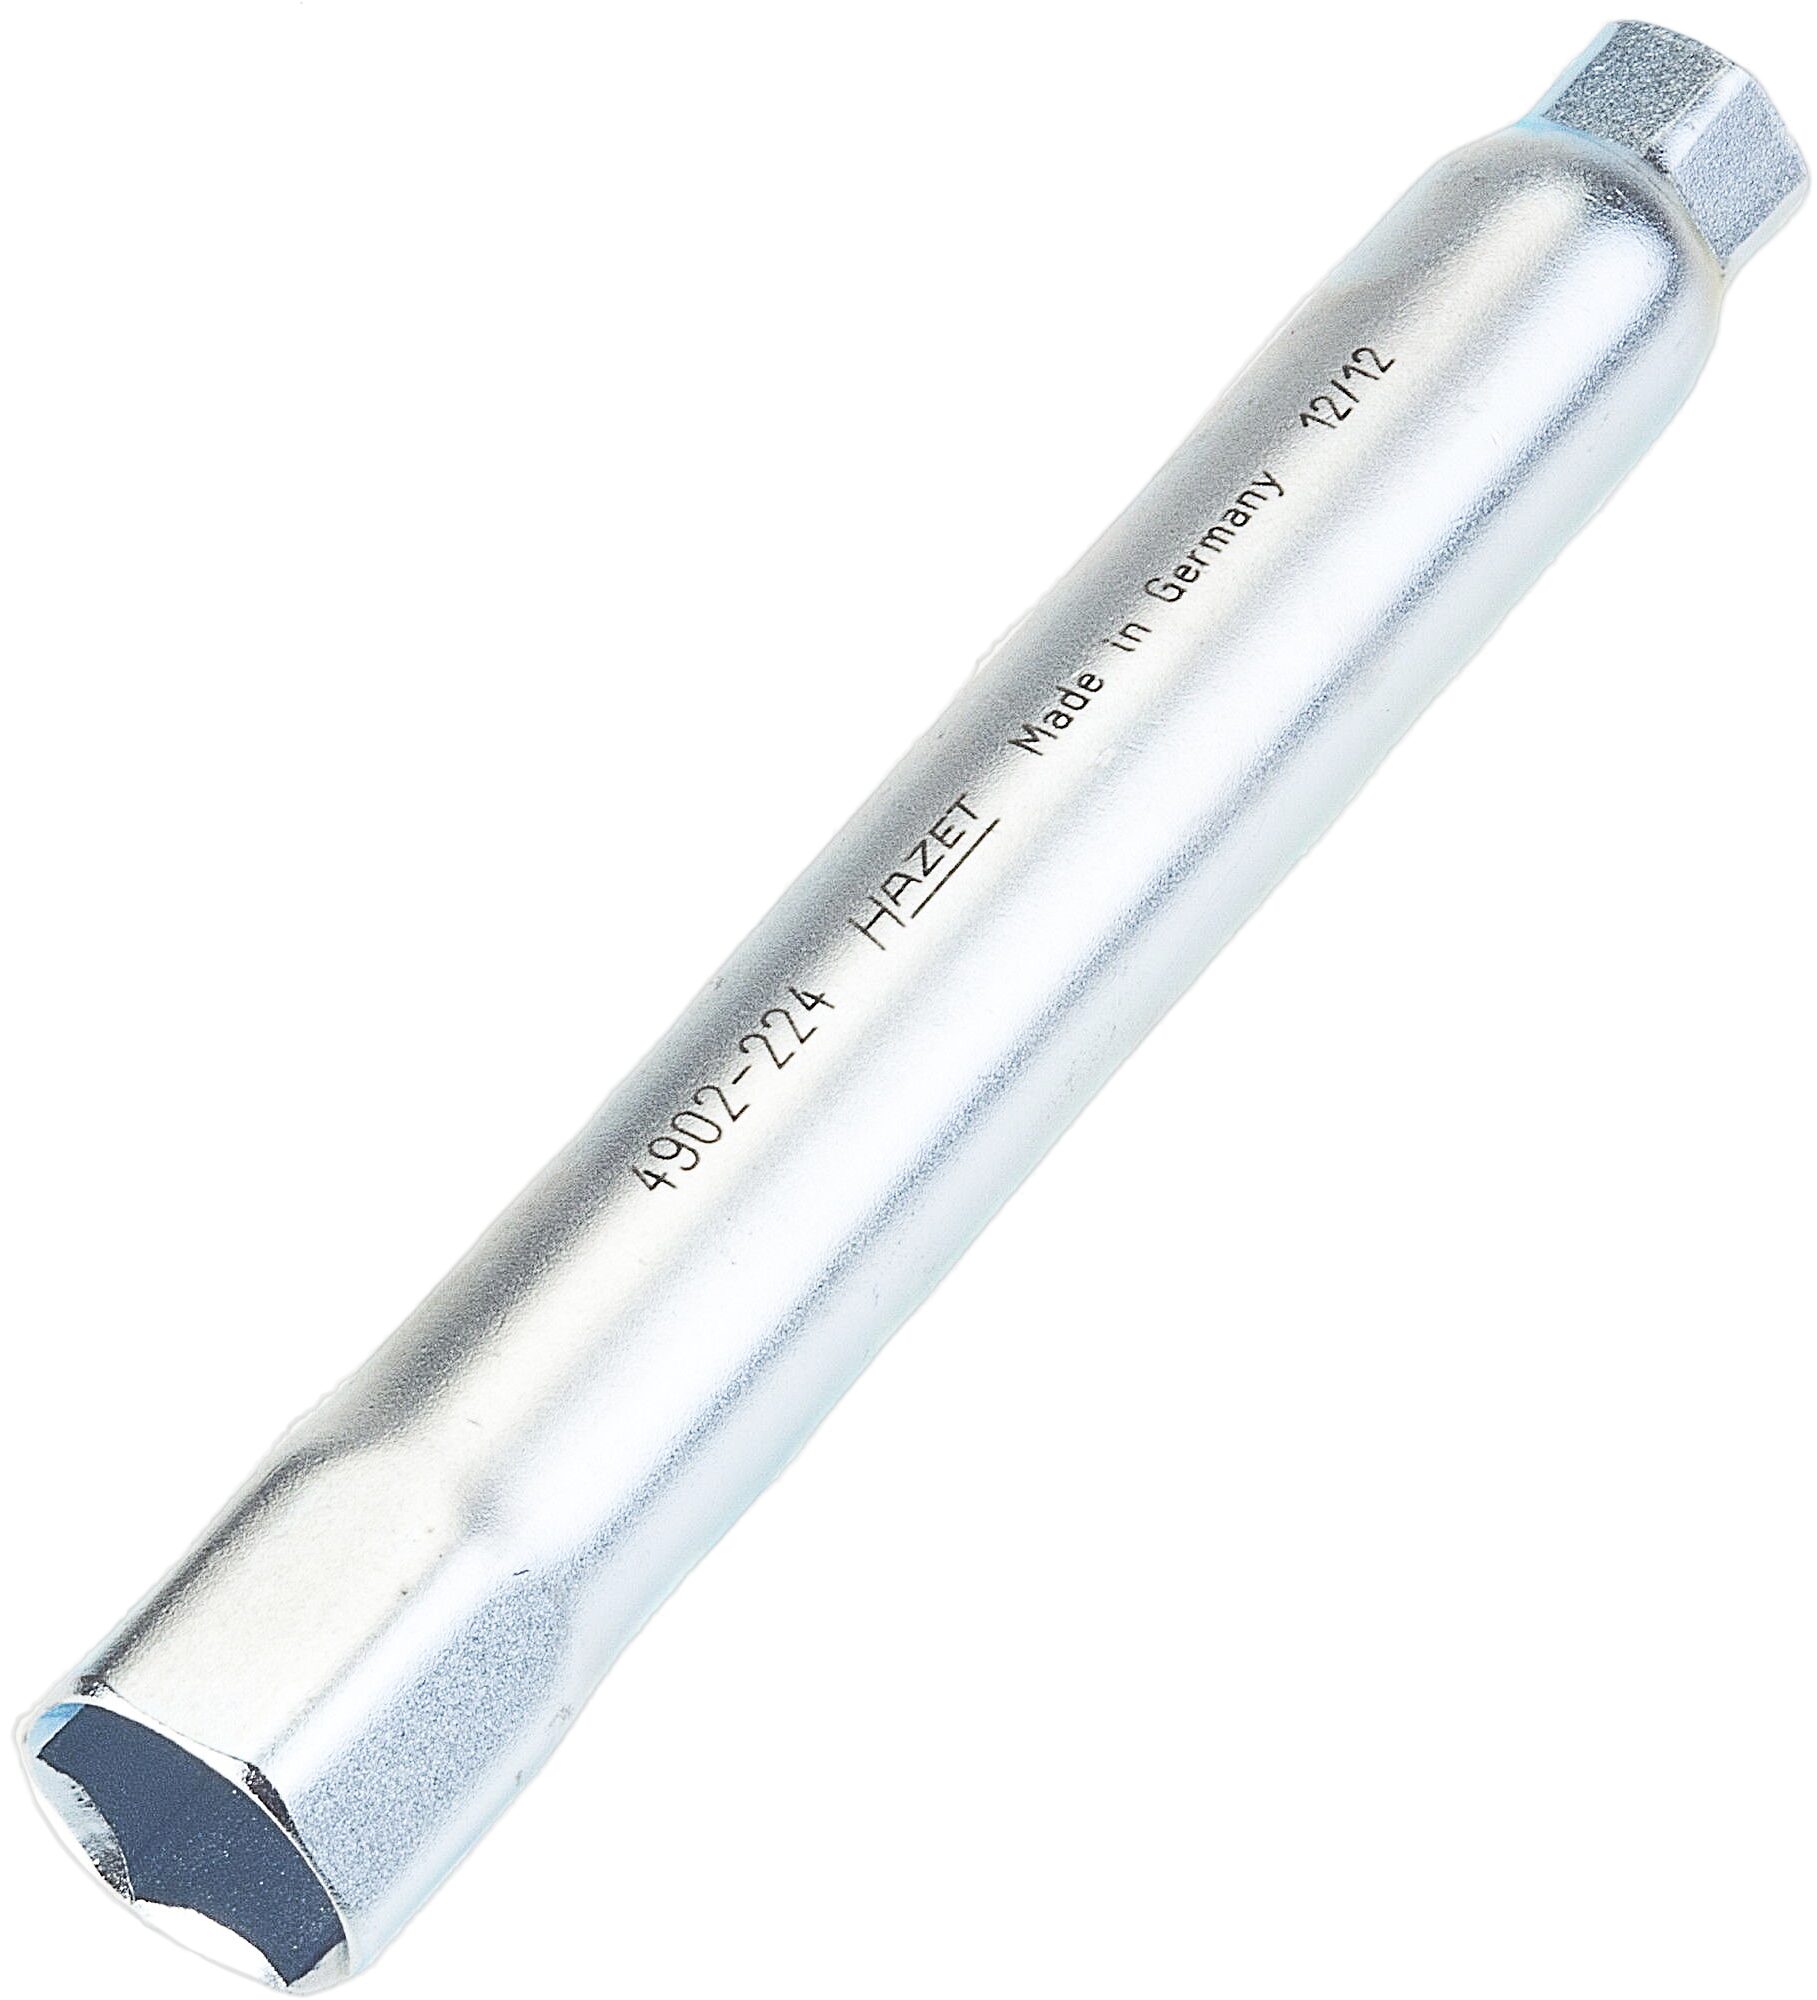 HAZET Rohr-Doppelsteckschlüssel 4902-224